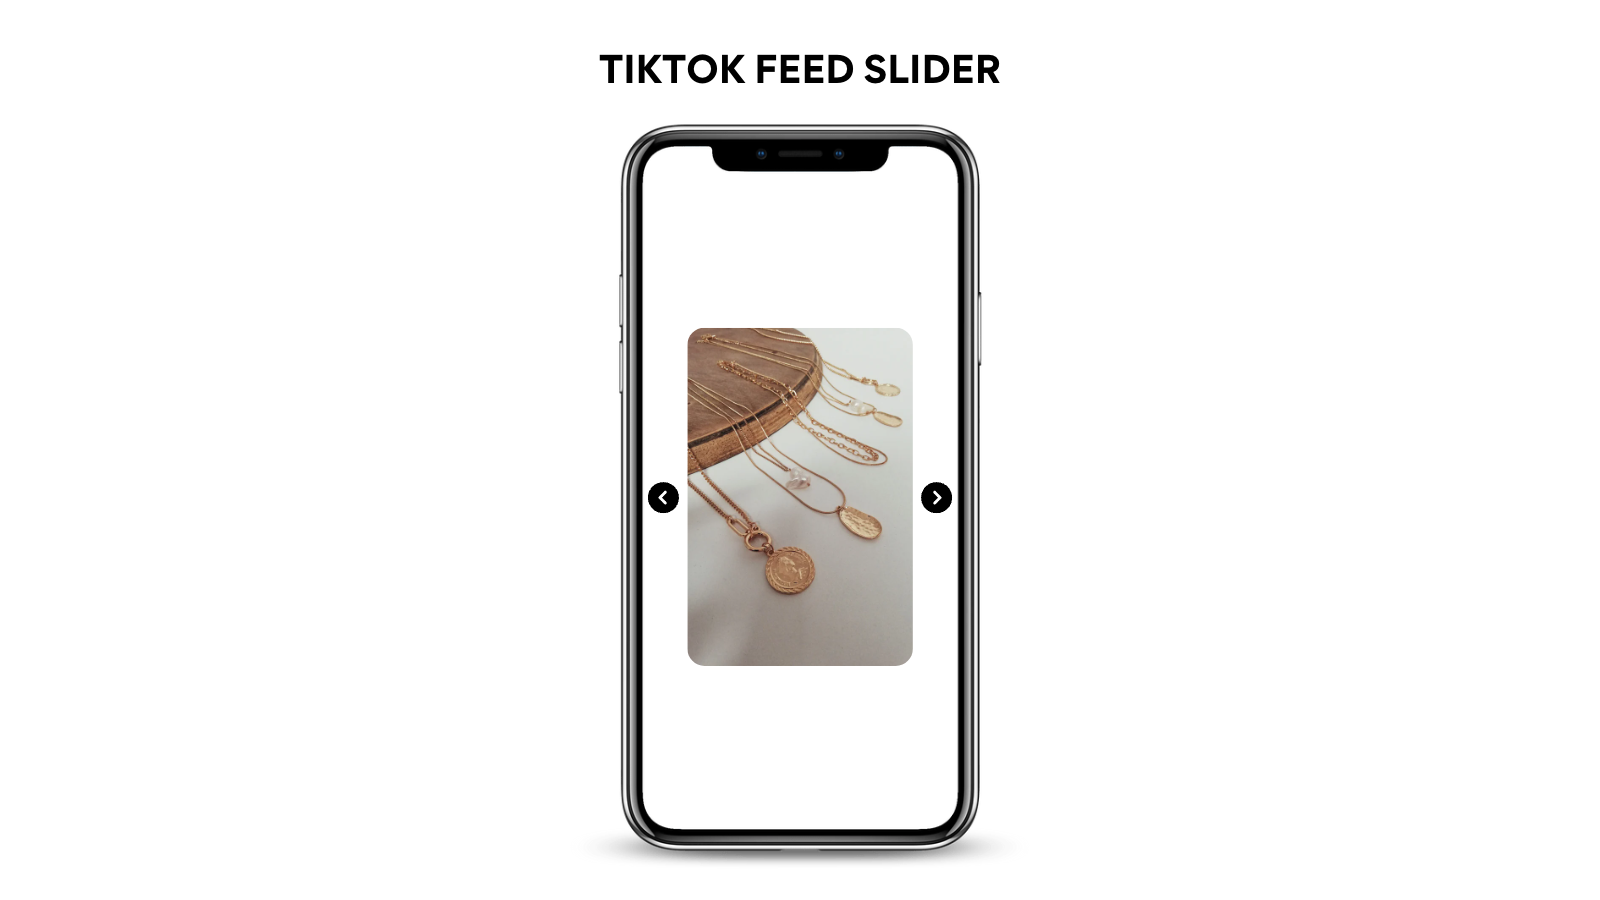 Feed de TikTok, Videos de TikTok, Slider de TikTok